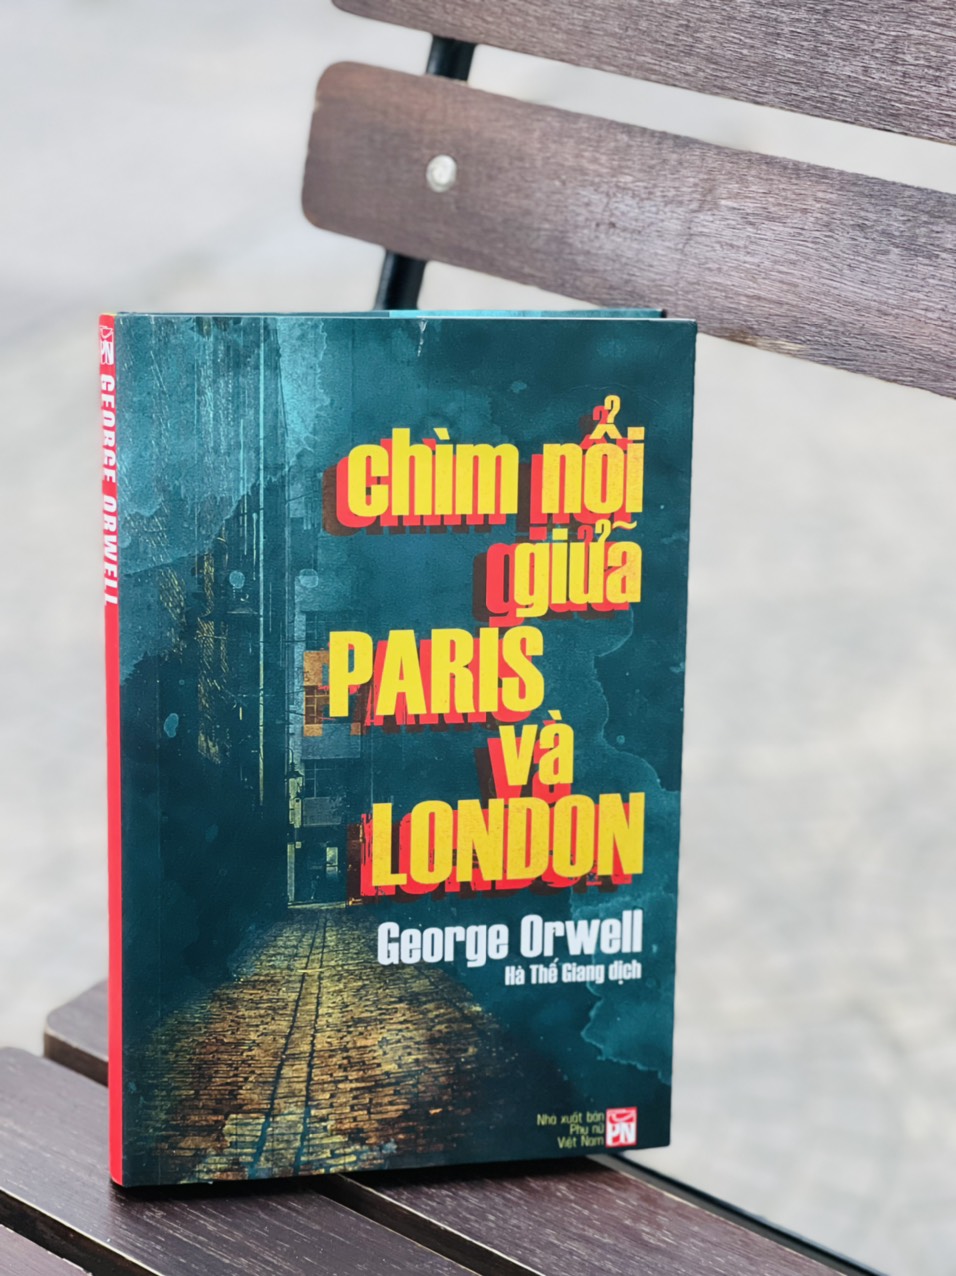 [Bìa cứng giới hạn 200c] (Dịch giả ký tặng) CHÌM NỔI GIỮA PARIS VÀ LONDON - George Orwell - Hà Thế Giang dịch – Nxb phụ nữ Việt Nam